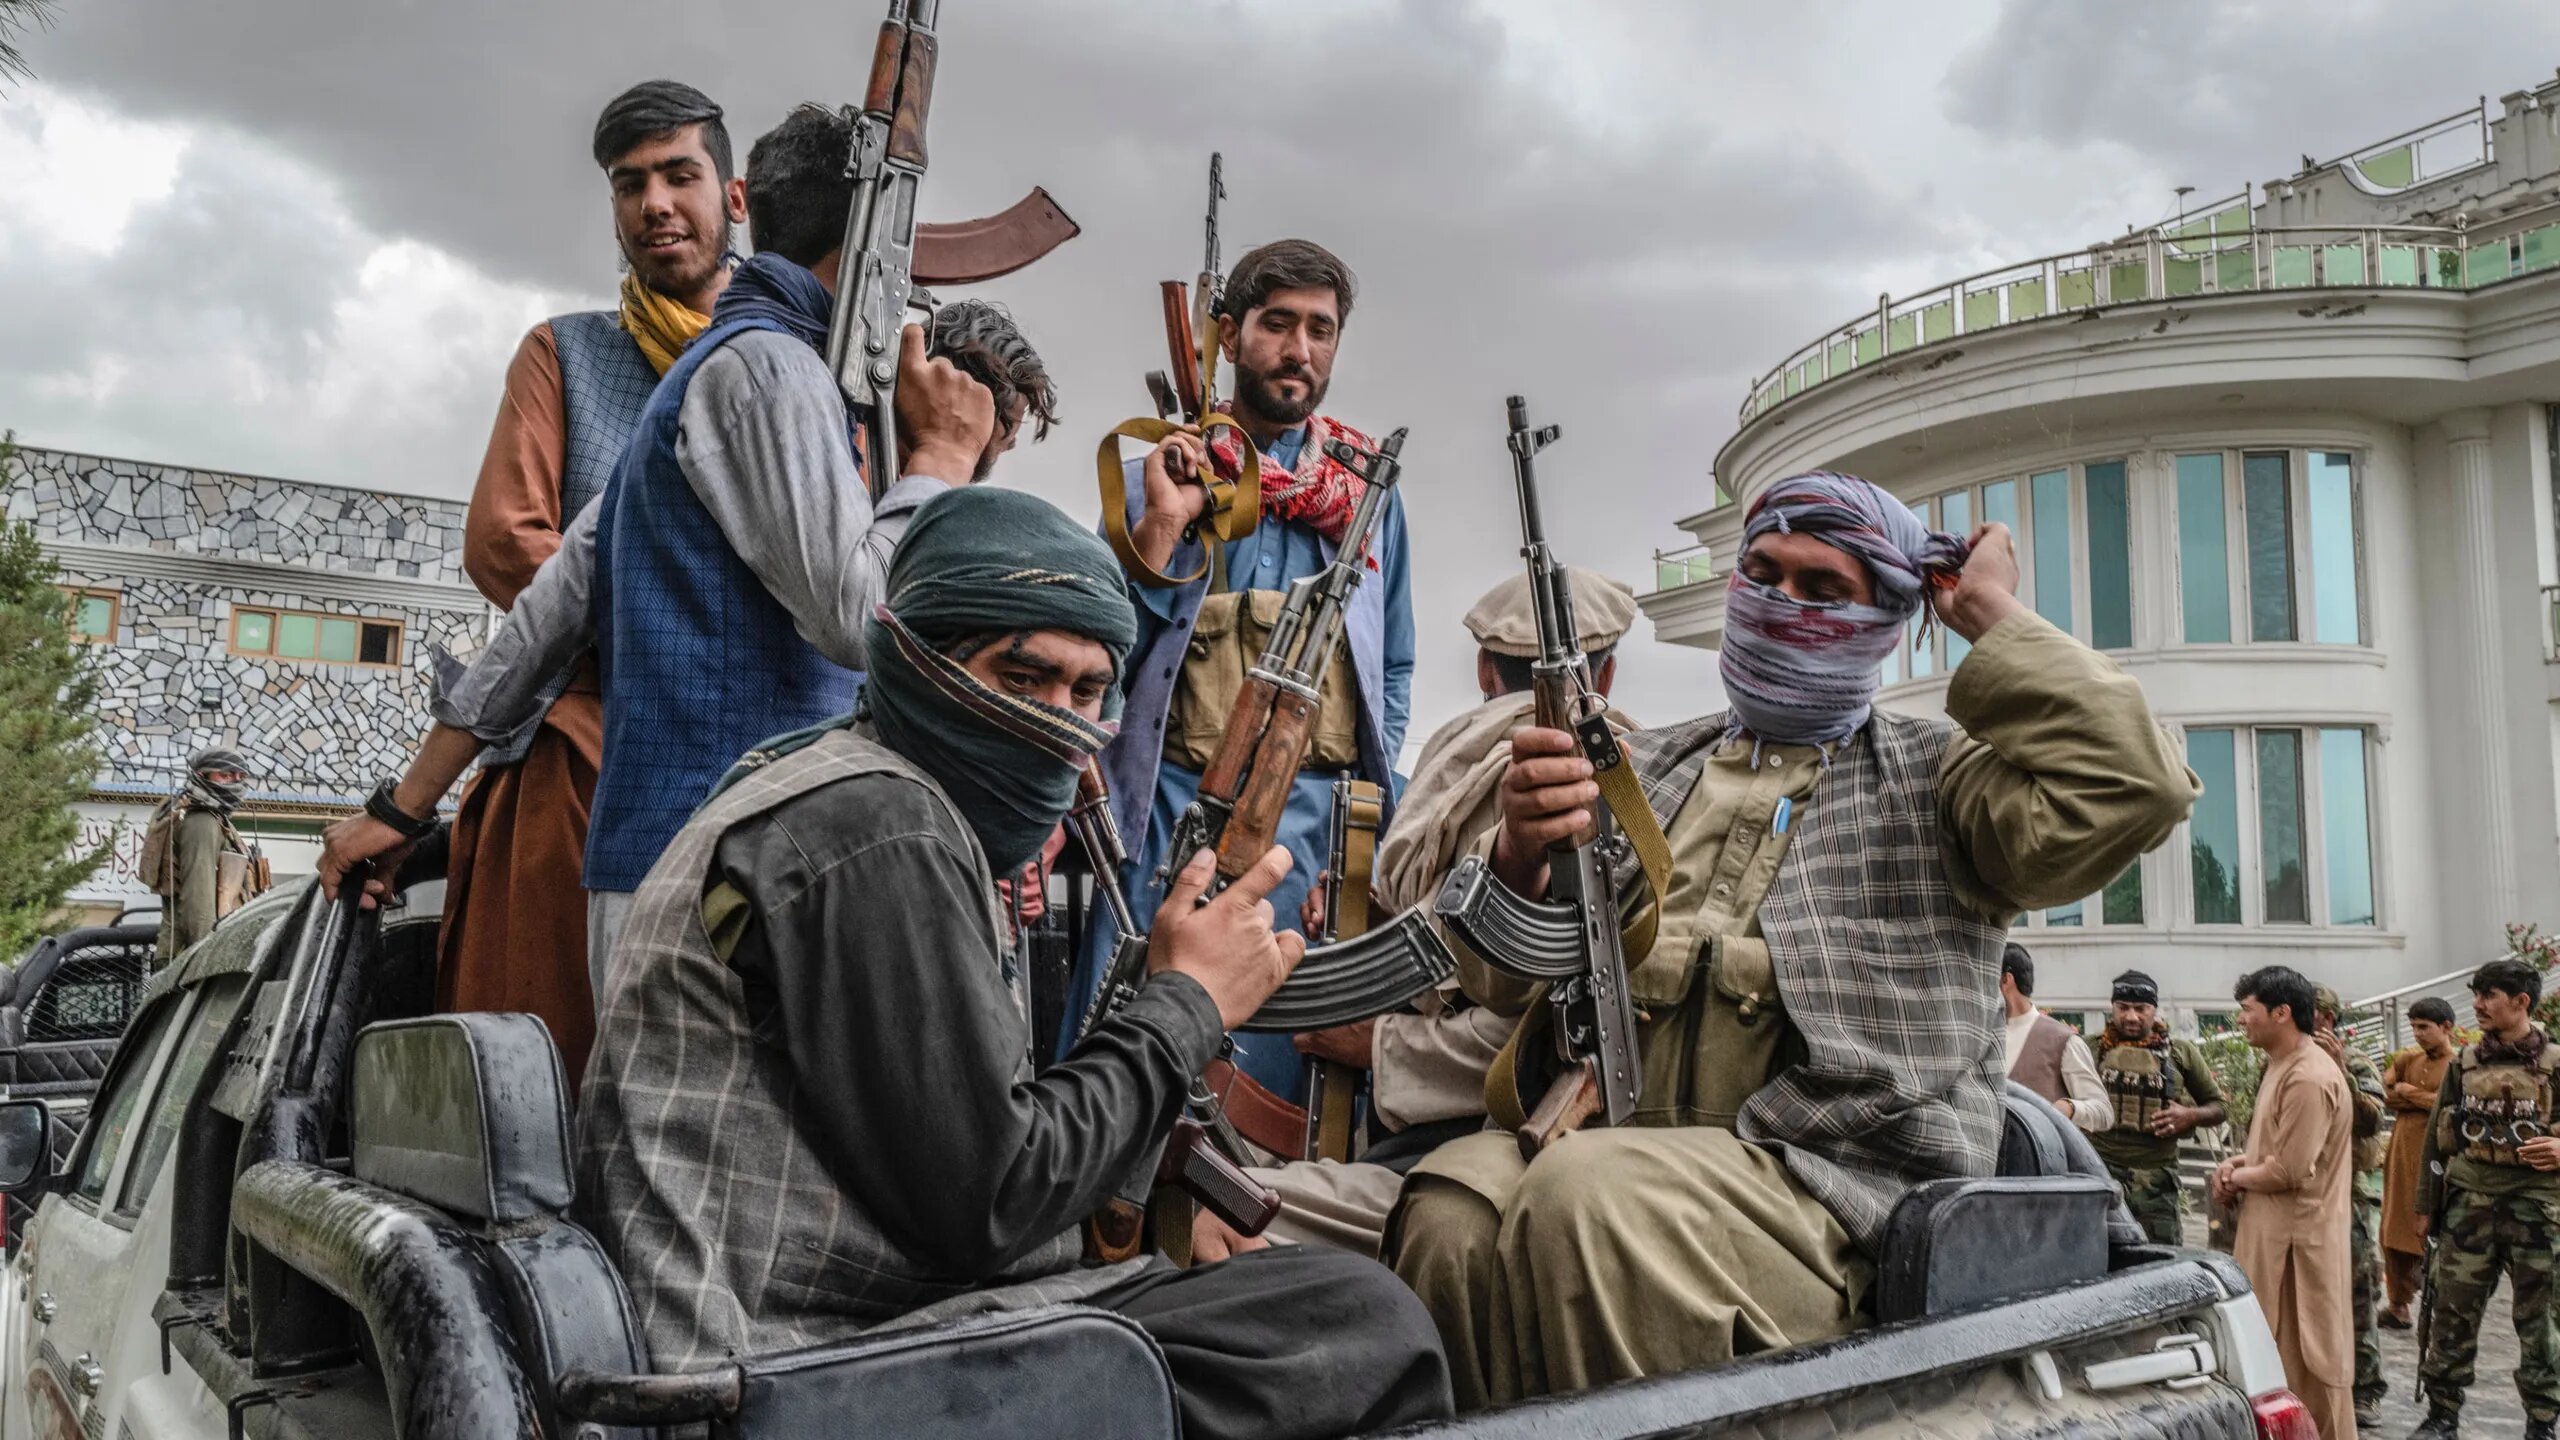 Talibans à Kaboul en Afghanistan, armés à l'arrière d'un pick-up.